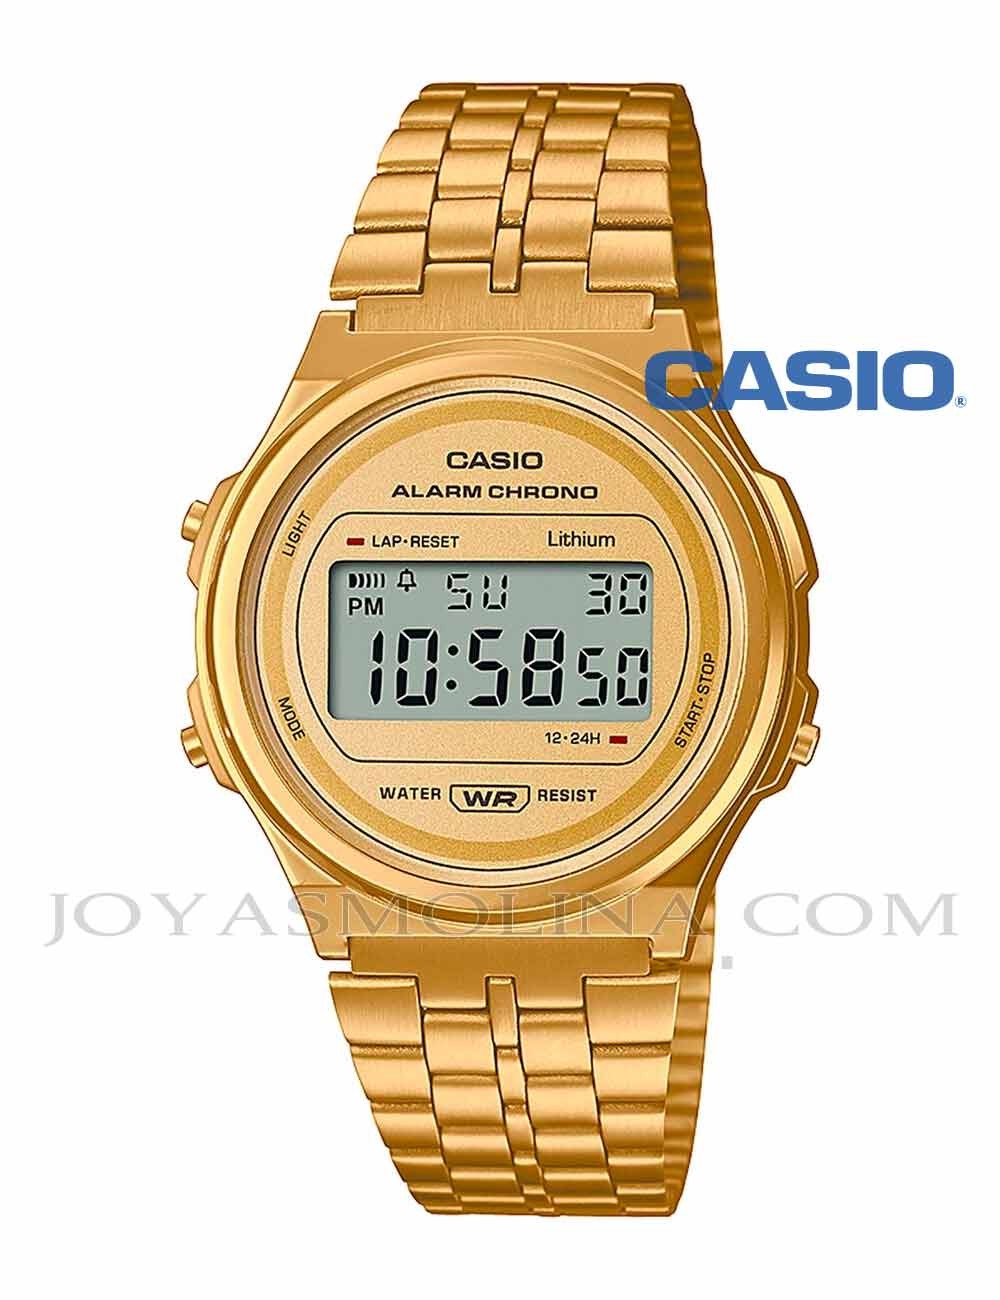 Reloj Casio digital dorado redondo vintage